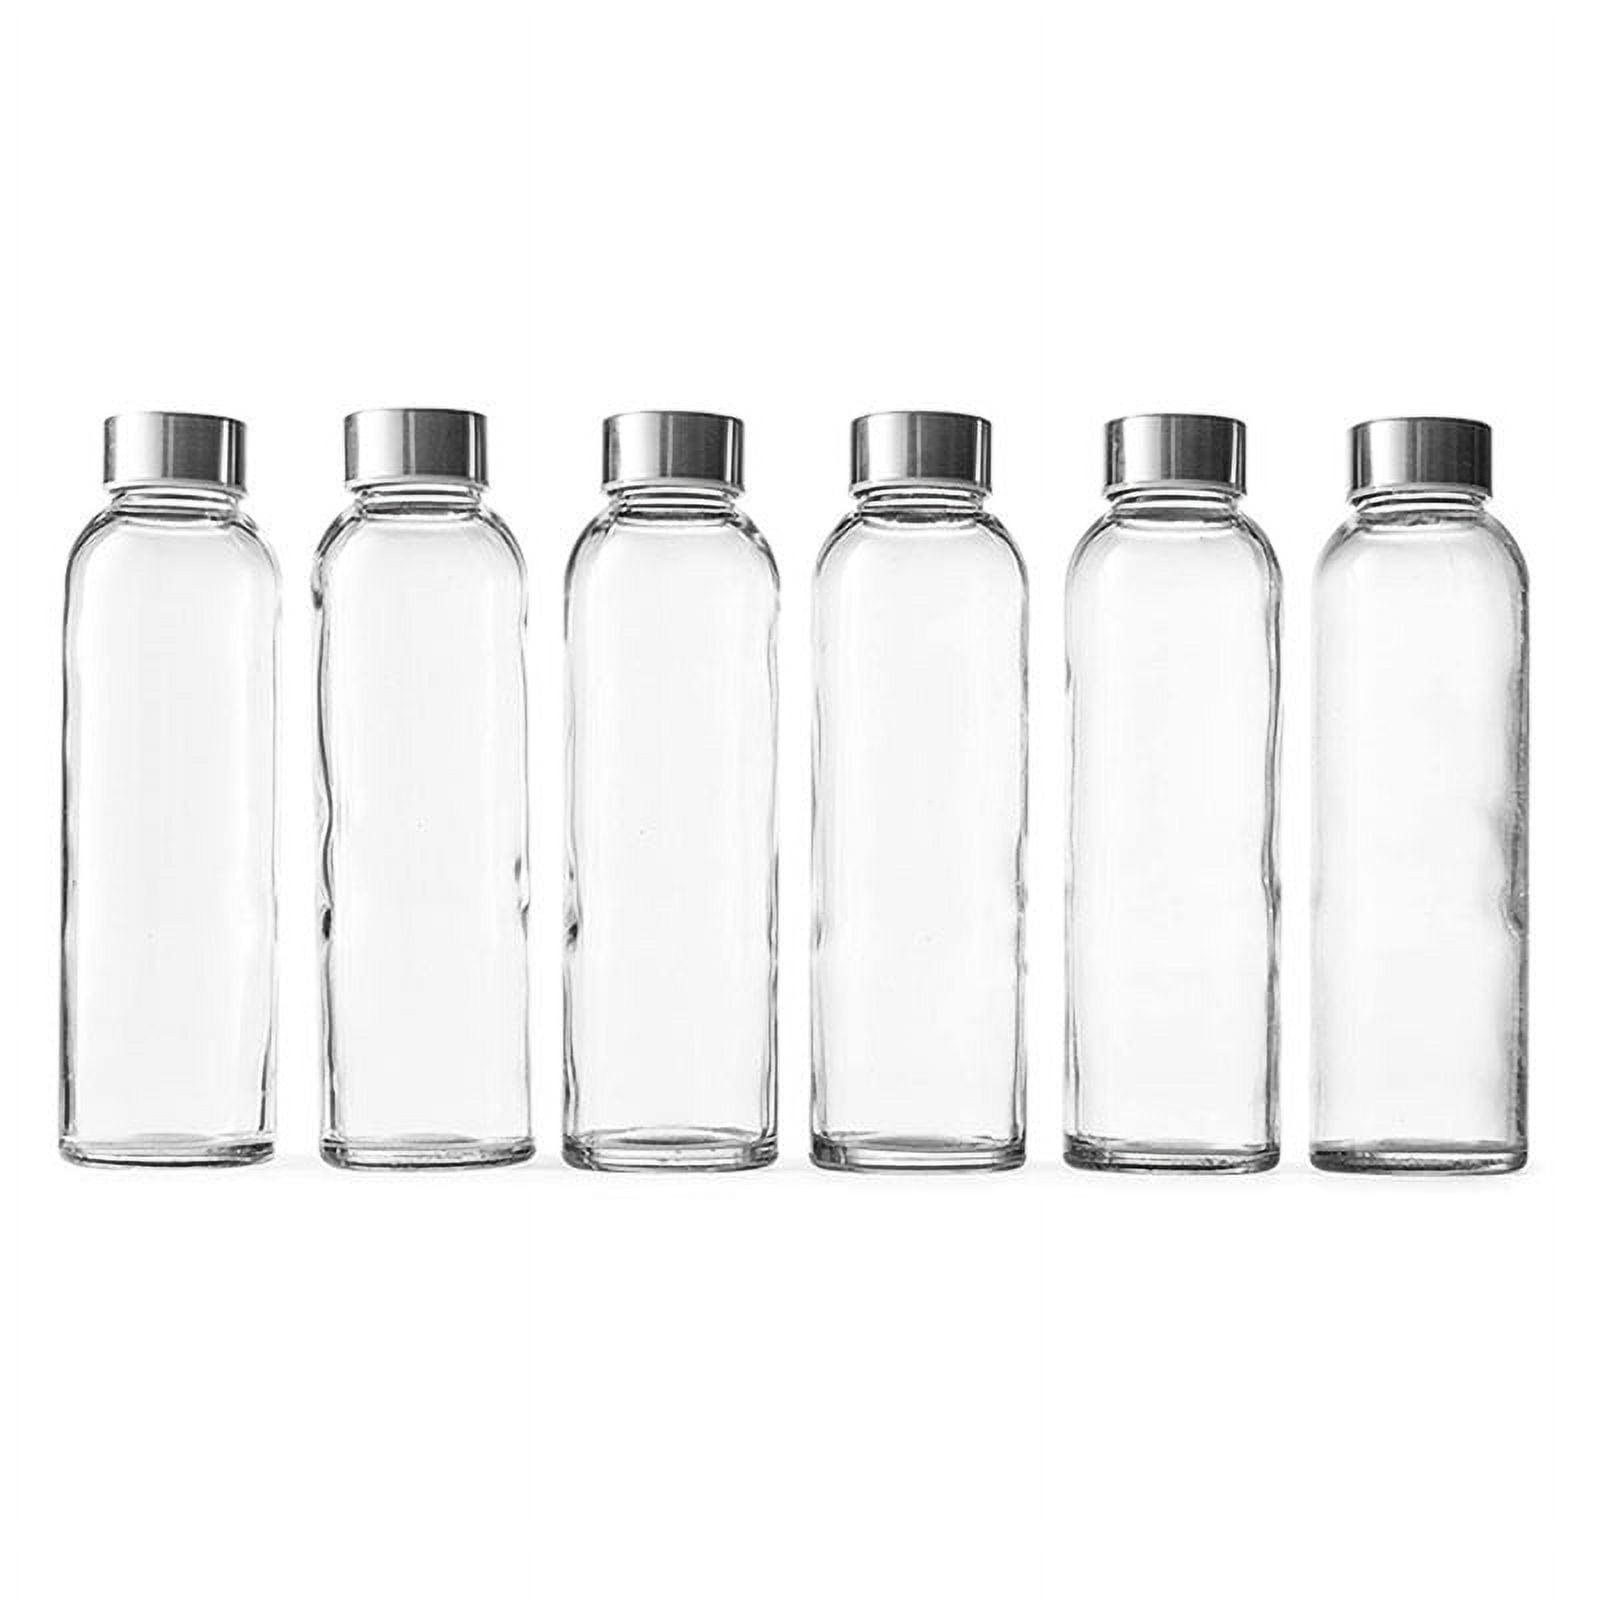 18 oz. Glass Water Bottle